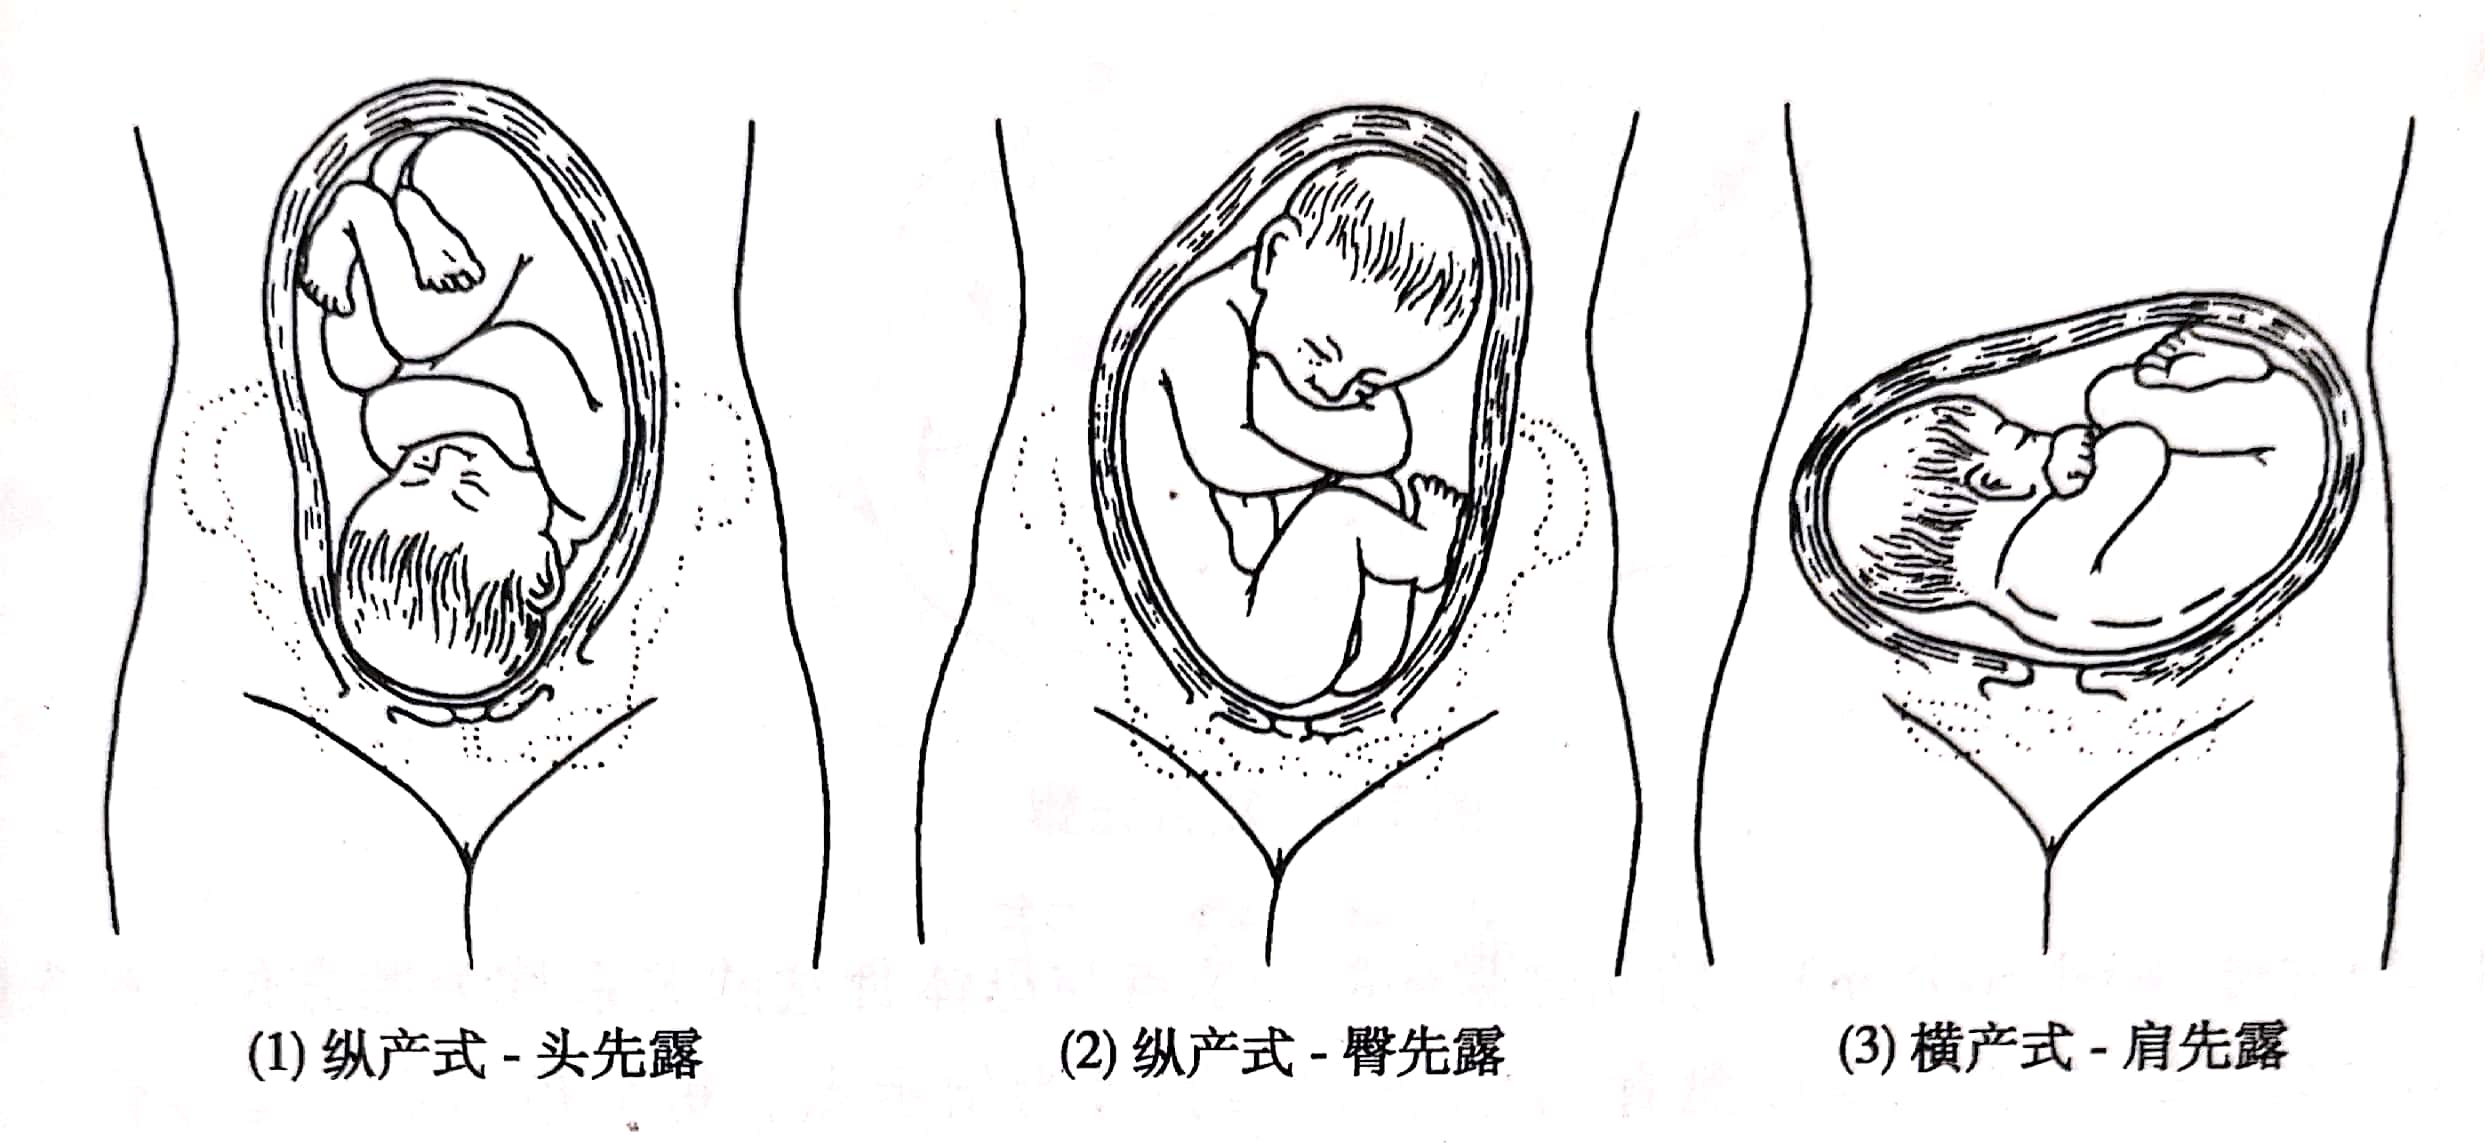 胎体纵轴与母体纵轴平行者,称为纵产式,占足月妊娠分娩总数的 9975%